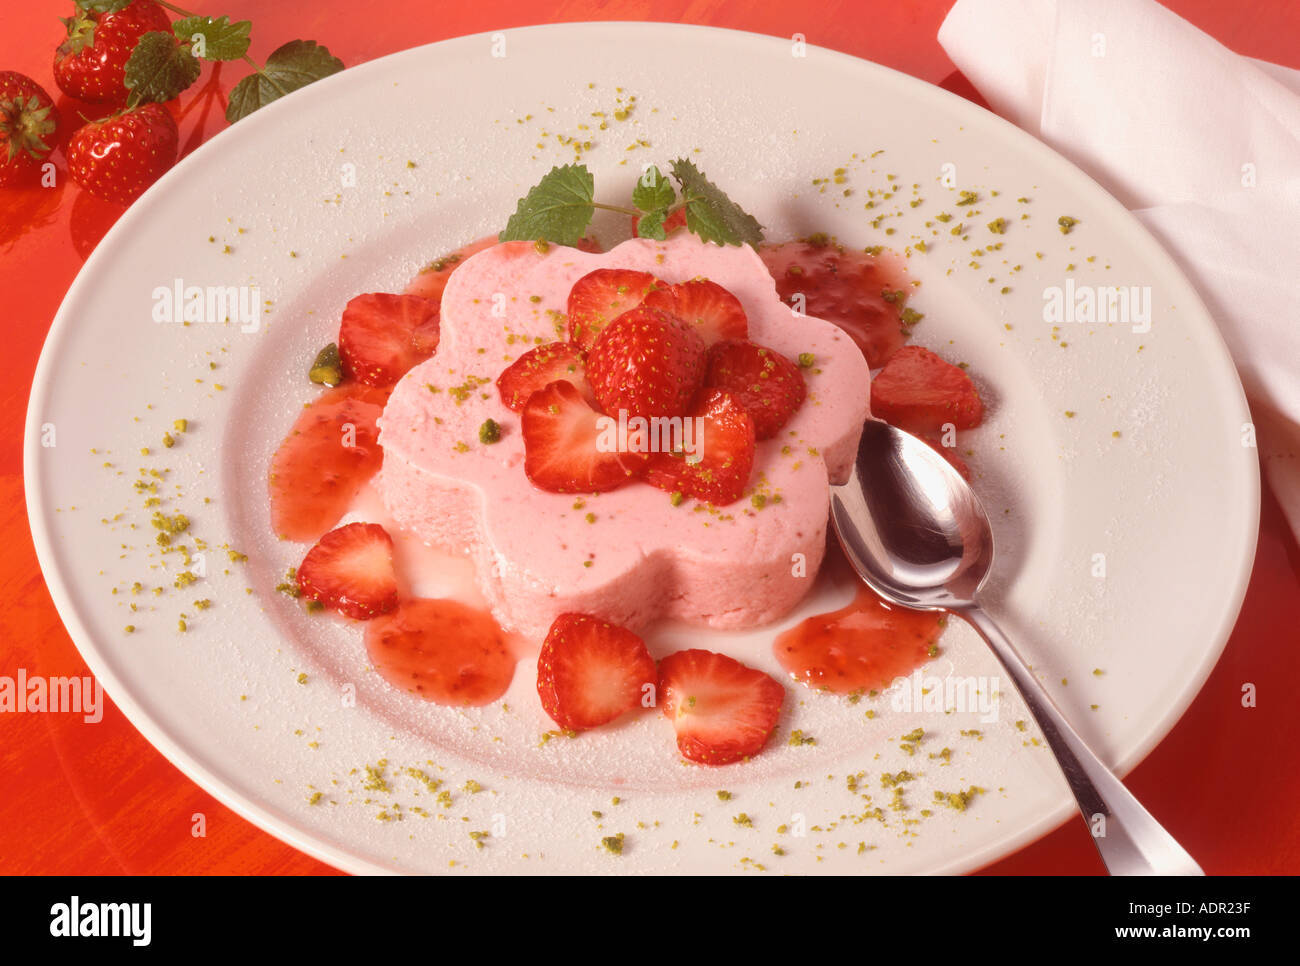 Erdbeercreme mit frischen Erdbeeren Strawberrycreme with fresh strawberry Stock Photo